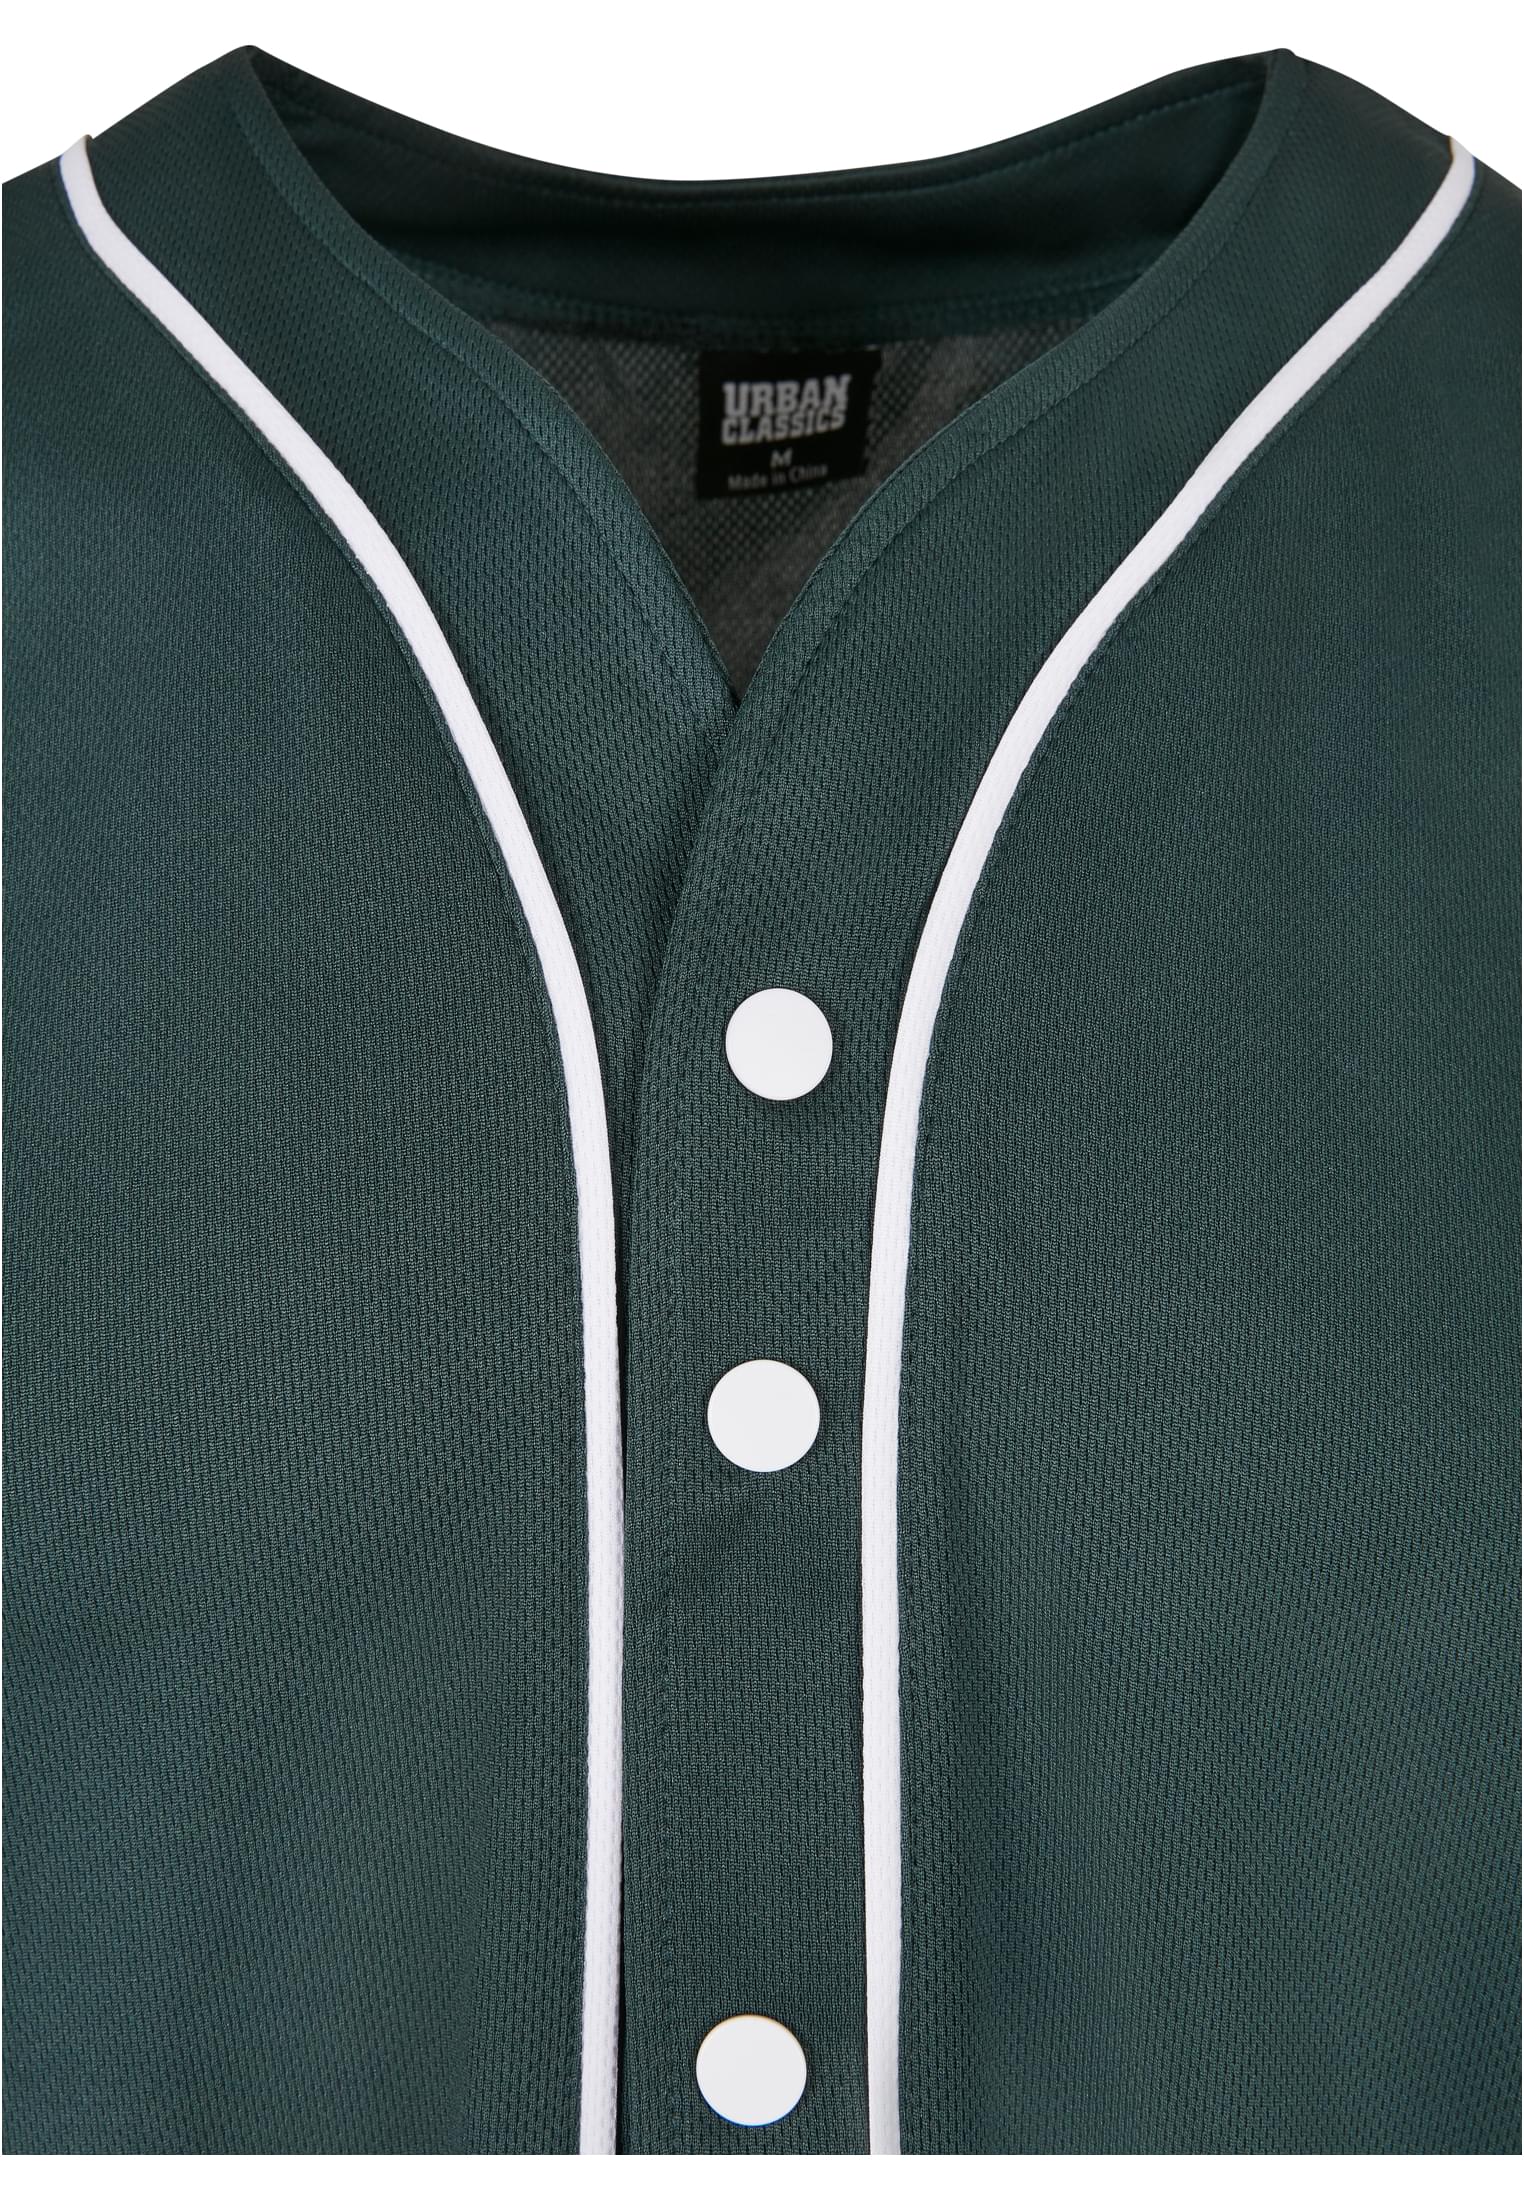 Herren Baseball Mesh Jersey in Farbe bottlegreen/white